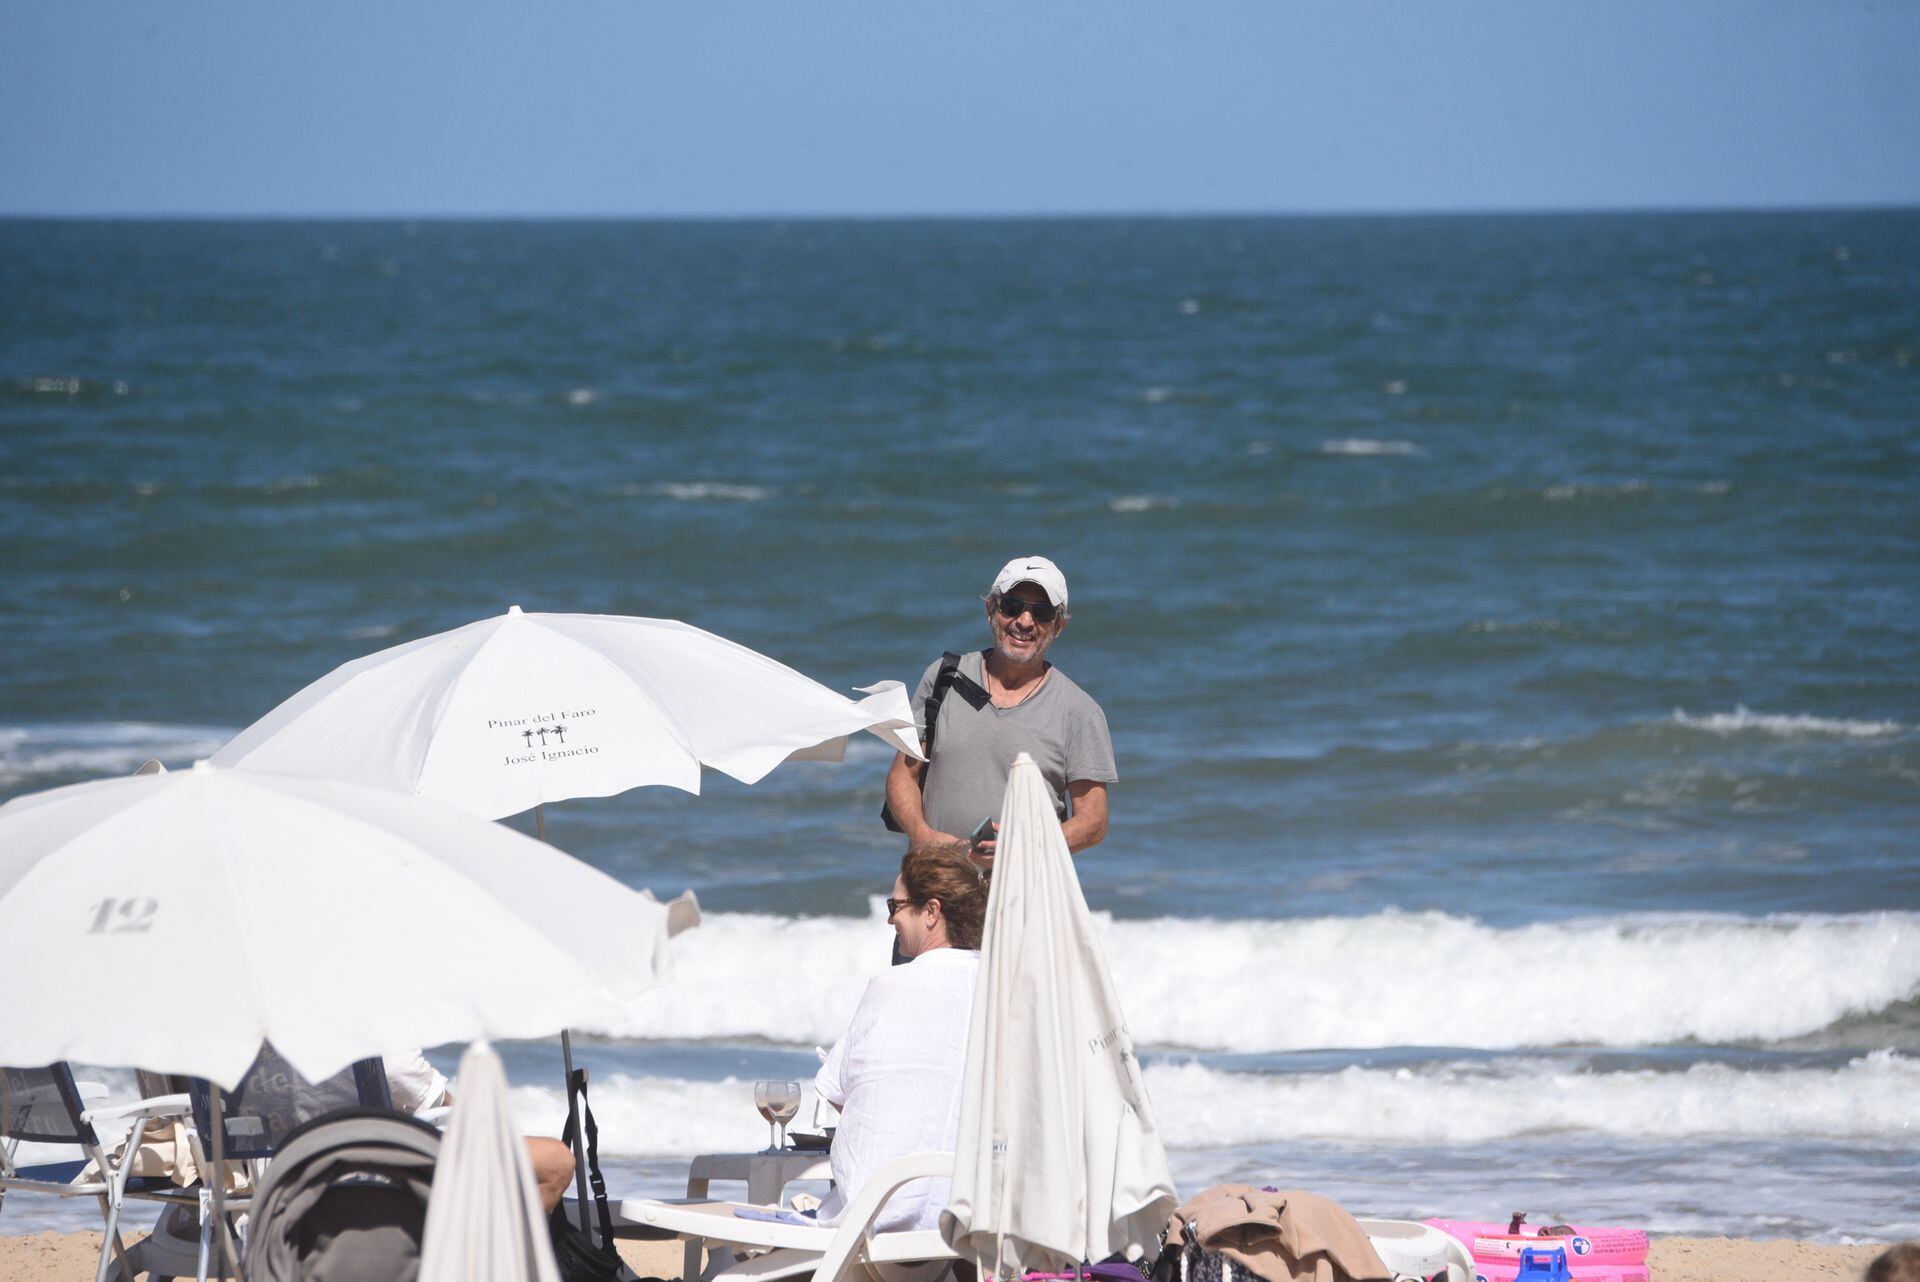 El actor disfrutó de la tarde en la playa cerca del exclusivo country en el cual se hospeda